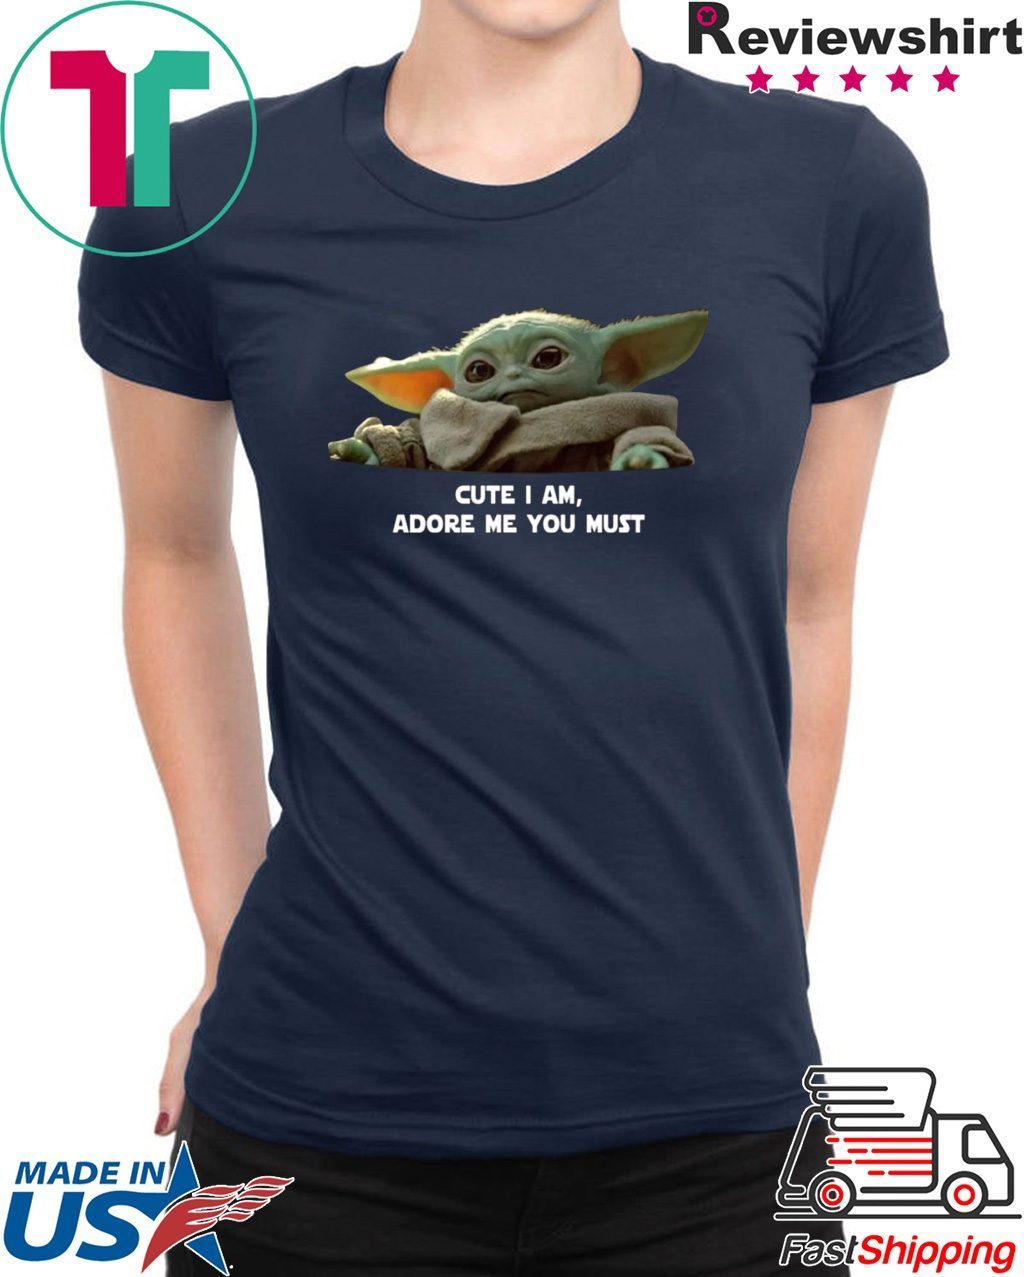 Baby Yoda Cute I Am Adore Me You Must Funny T-Shirt Men Women Unisex Tee S-5XL 